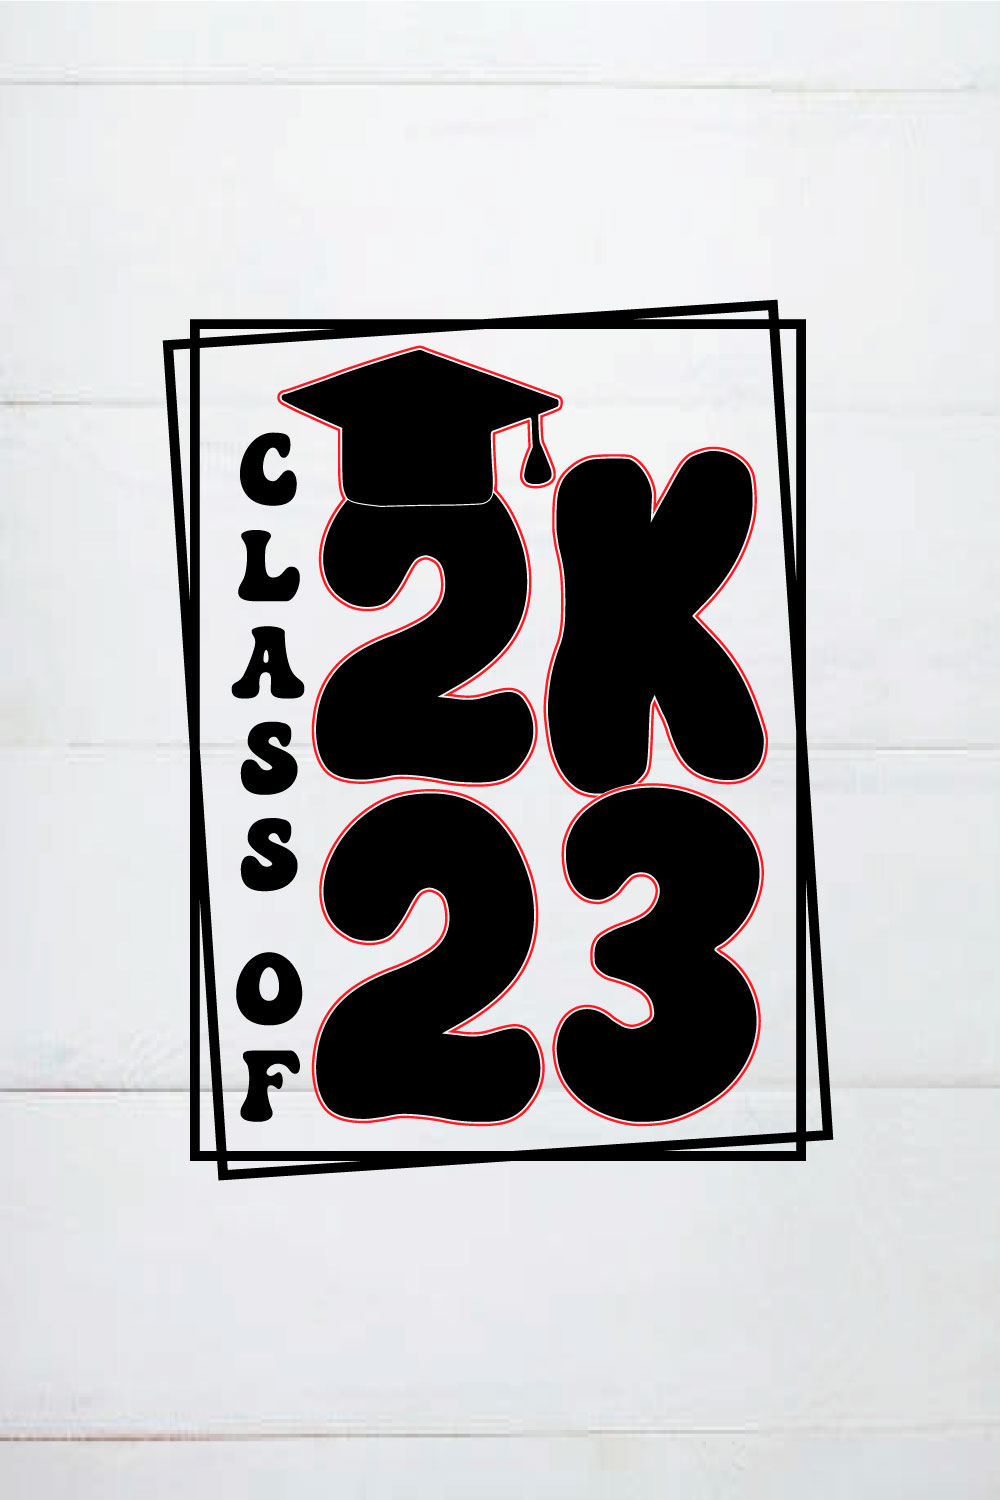 CLASS OF 2023 SHIRT,graduation gifts,graduation card,graduation shirt pinterest preview image.